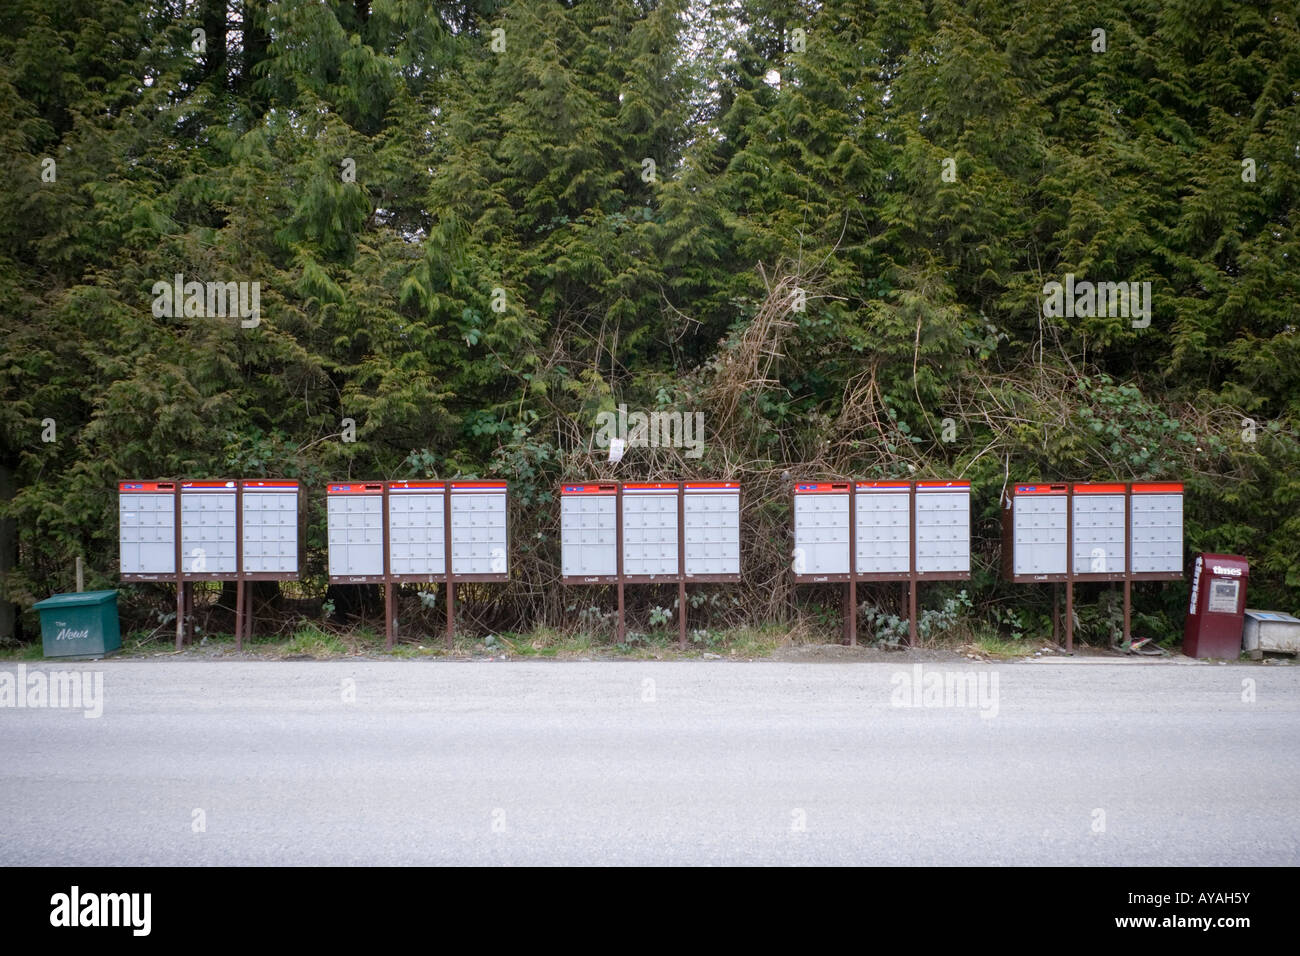 Une ligne de Postes Canada super boîtes aux lettres sur une route rurale Abbotsford BC Canada Banque D'Images